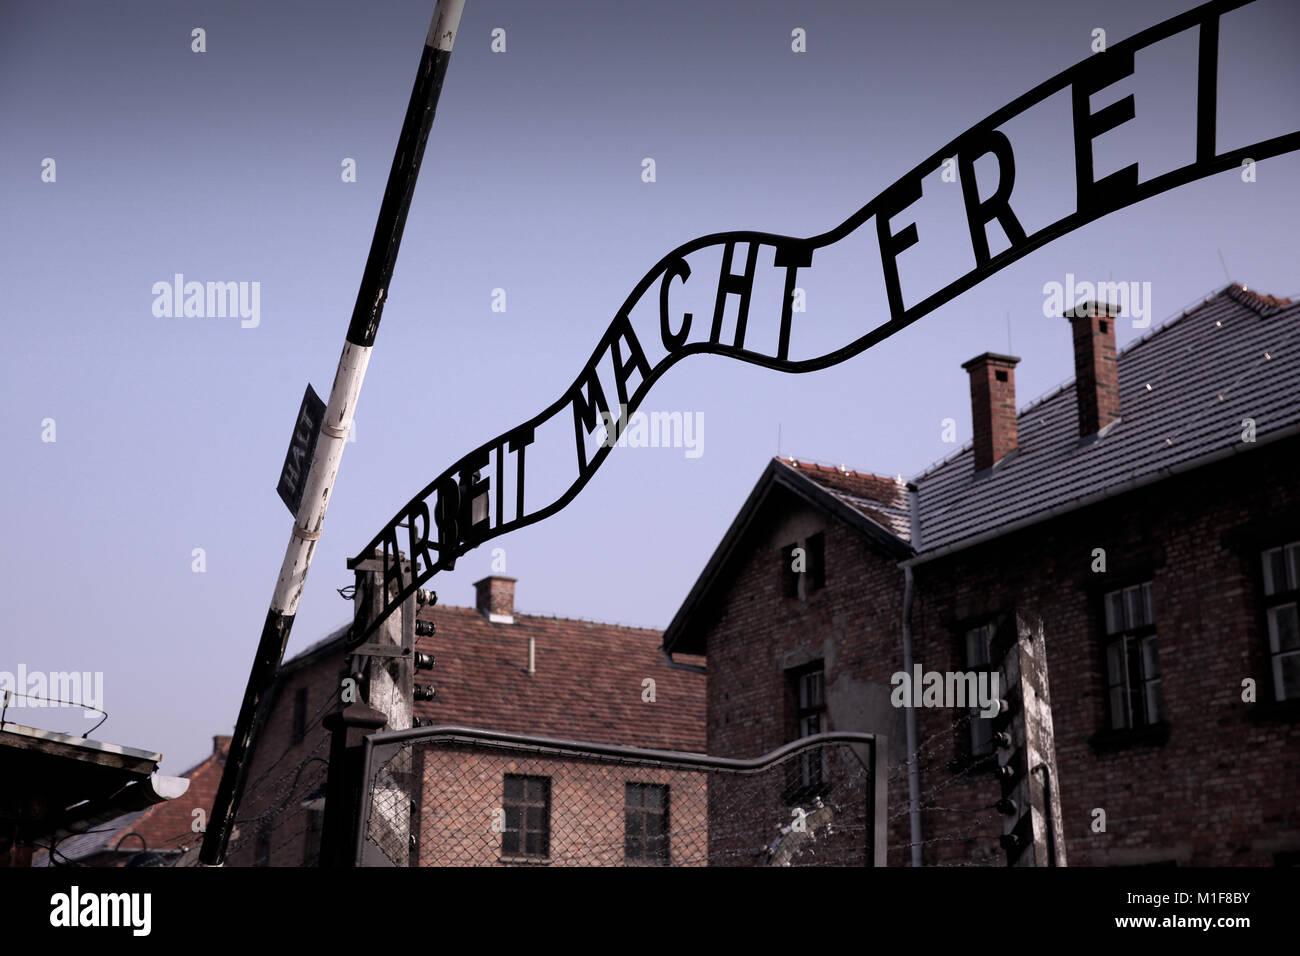 Eingang zu Auschwitz I, kühlen iconic Signage 'Arbeit macht frei' - Arbeit macht frei Stockfoto